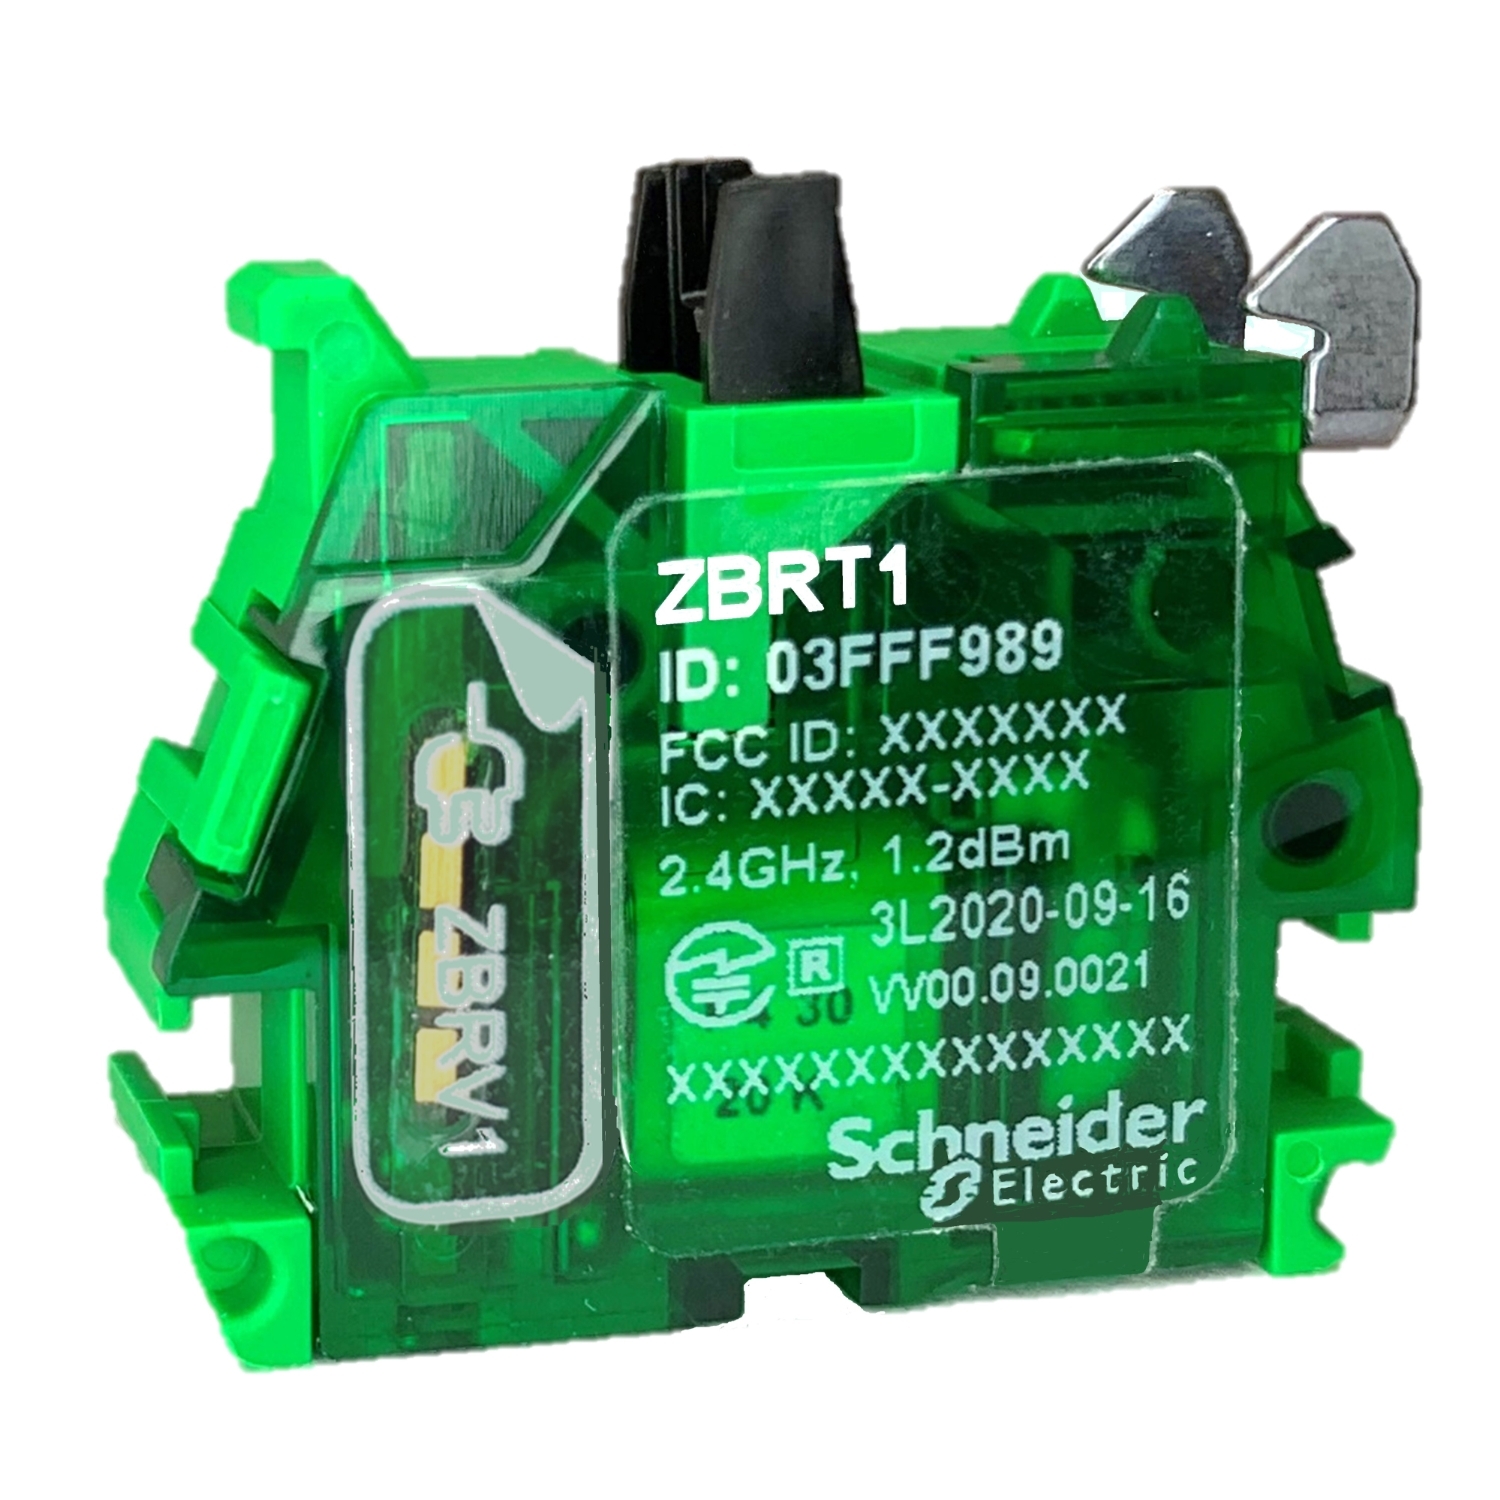 Harmony ZBRT la interfaz inalambrica y sin bateria de Schneider Electric para pulsadores 3.JPG